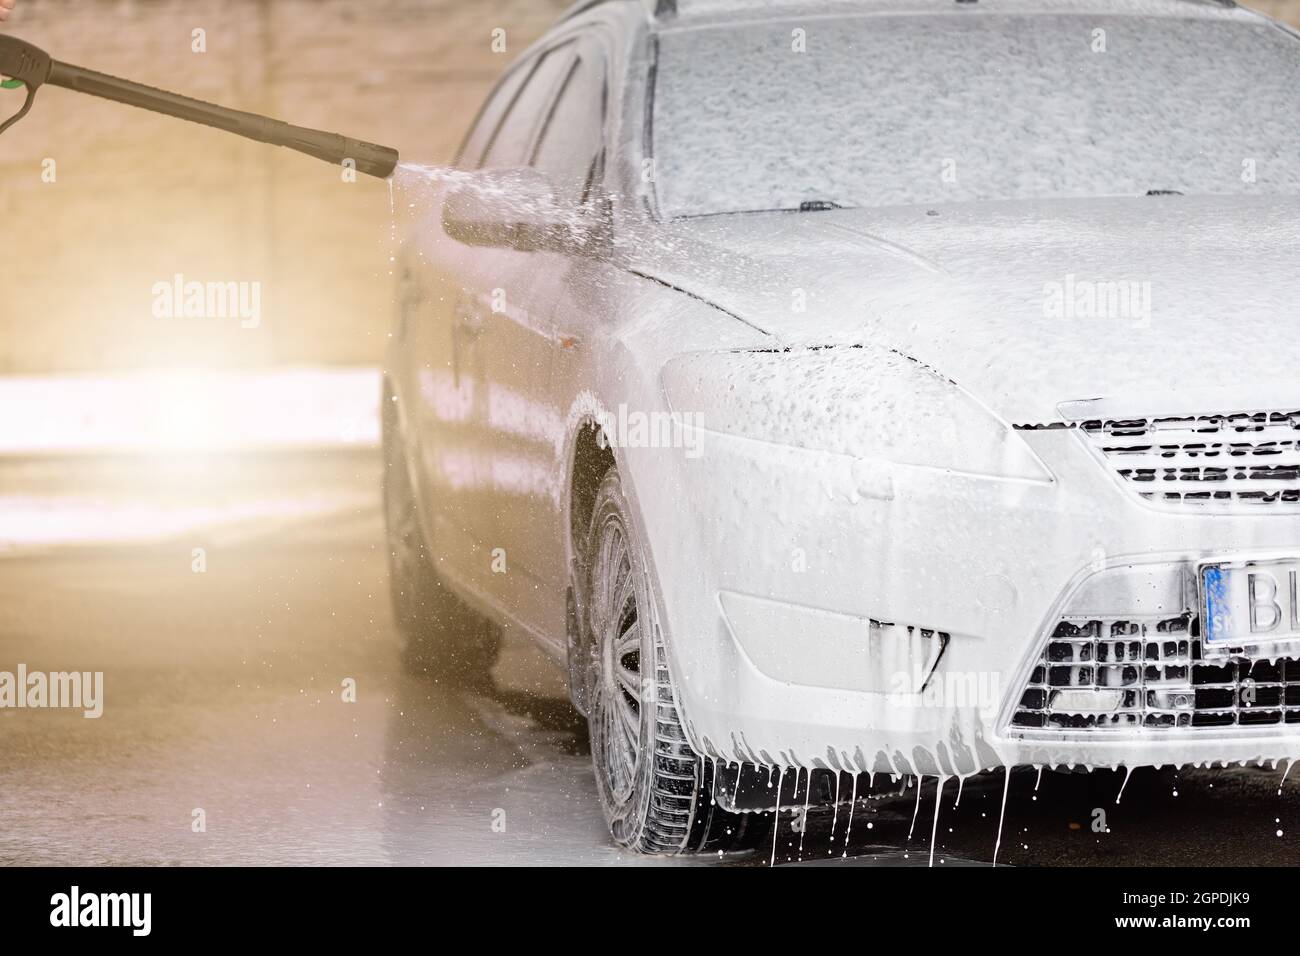 Limpieza al aire libre del coche con espuma de jabón usando chorro